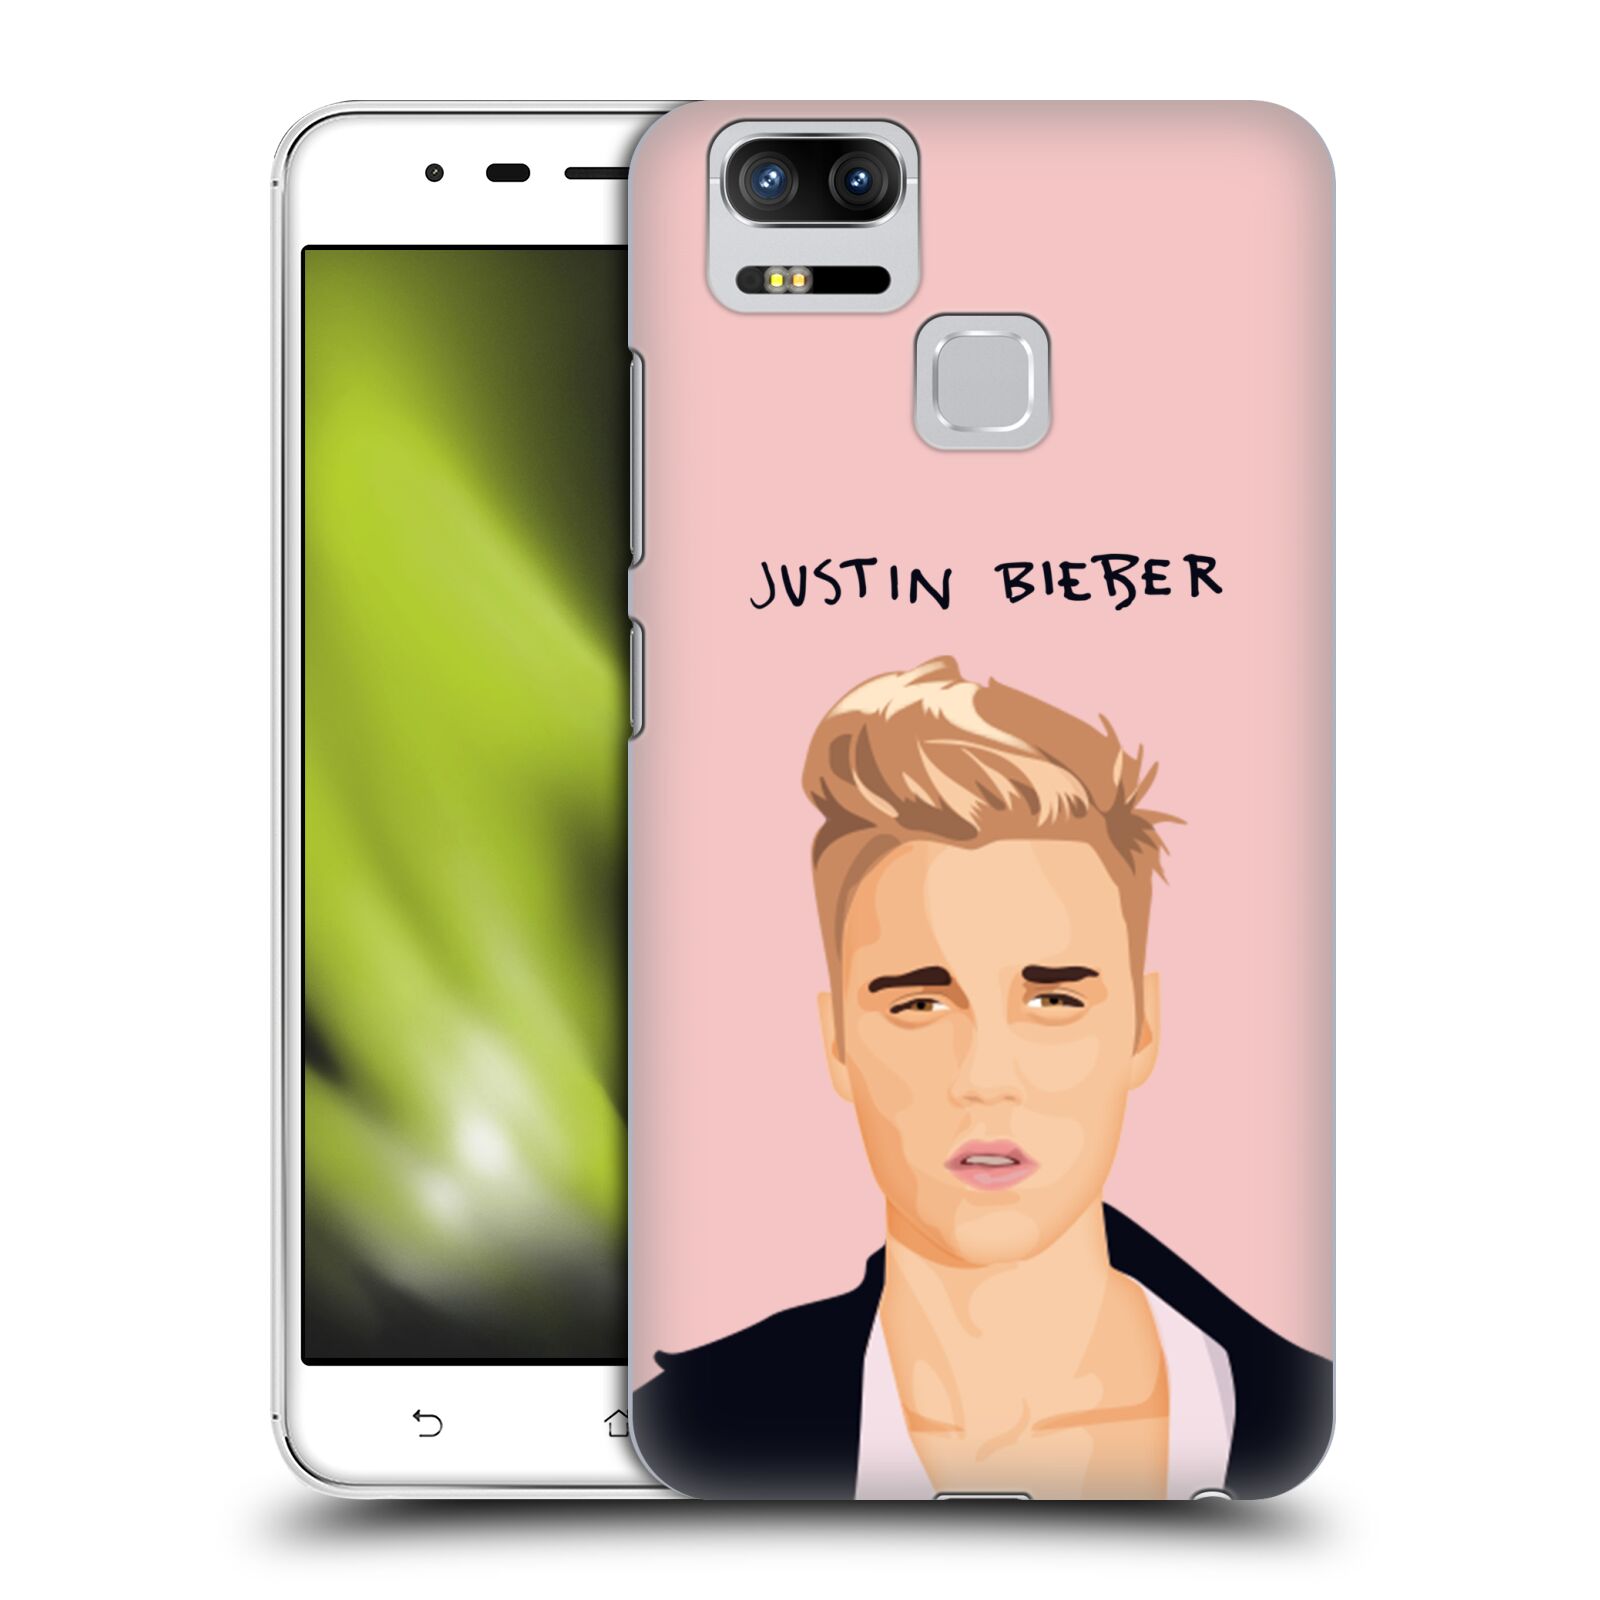 HEAD CASE plastový obal na mobil Asus Zenfone 3 Zoom ZE553KL Justin Bieber kreslená tvář růžové pozadí